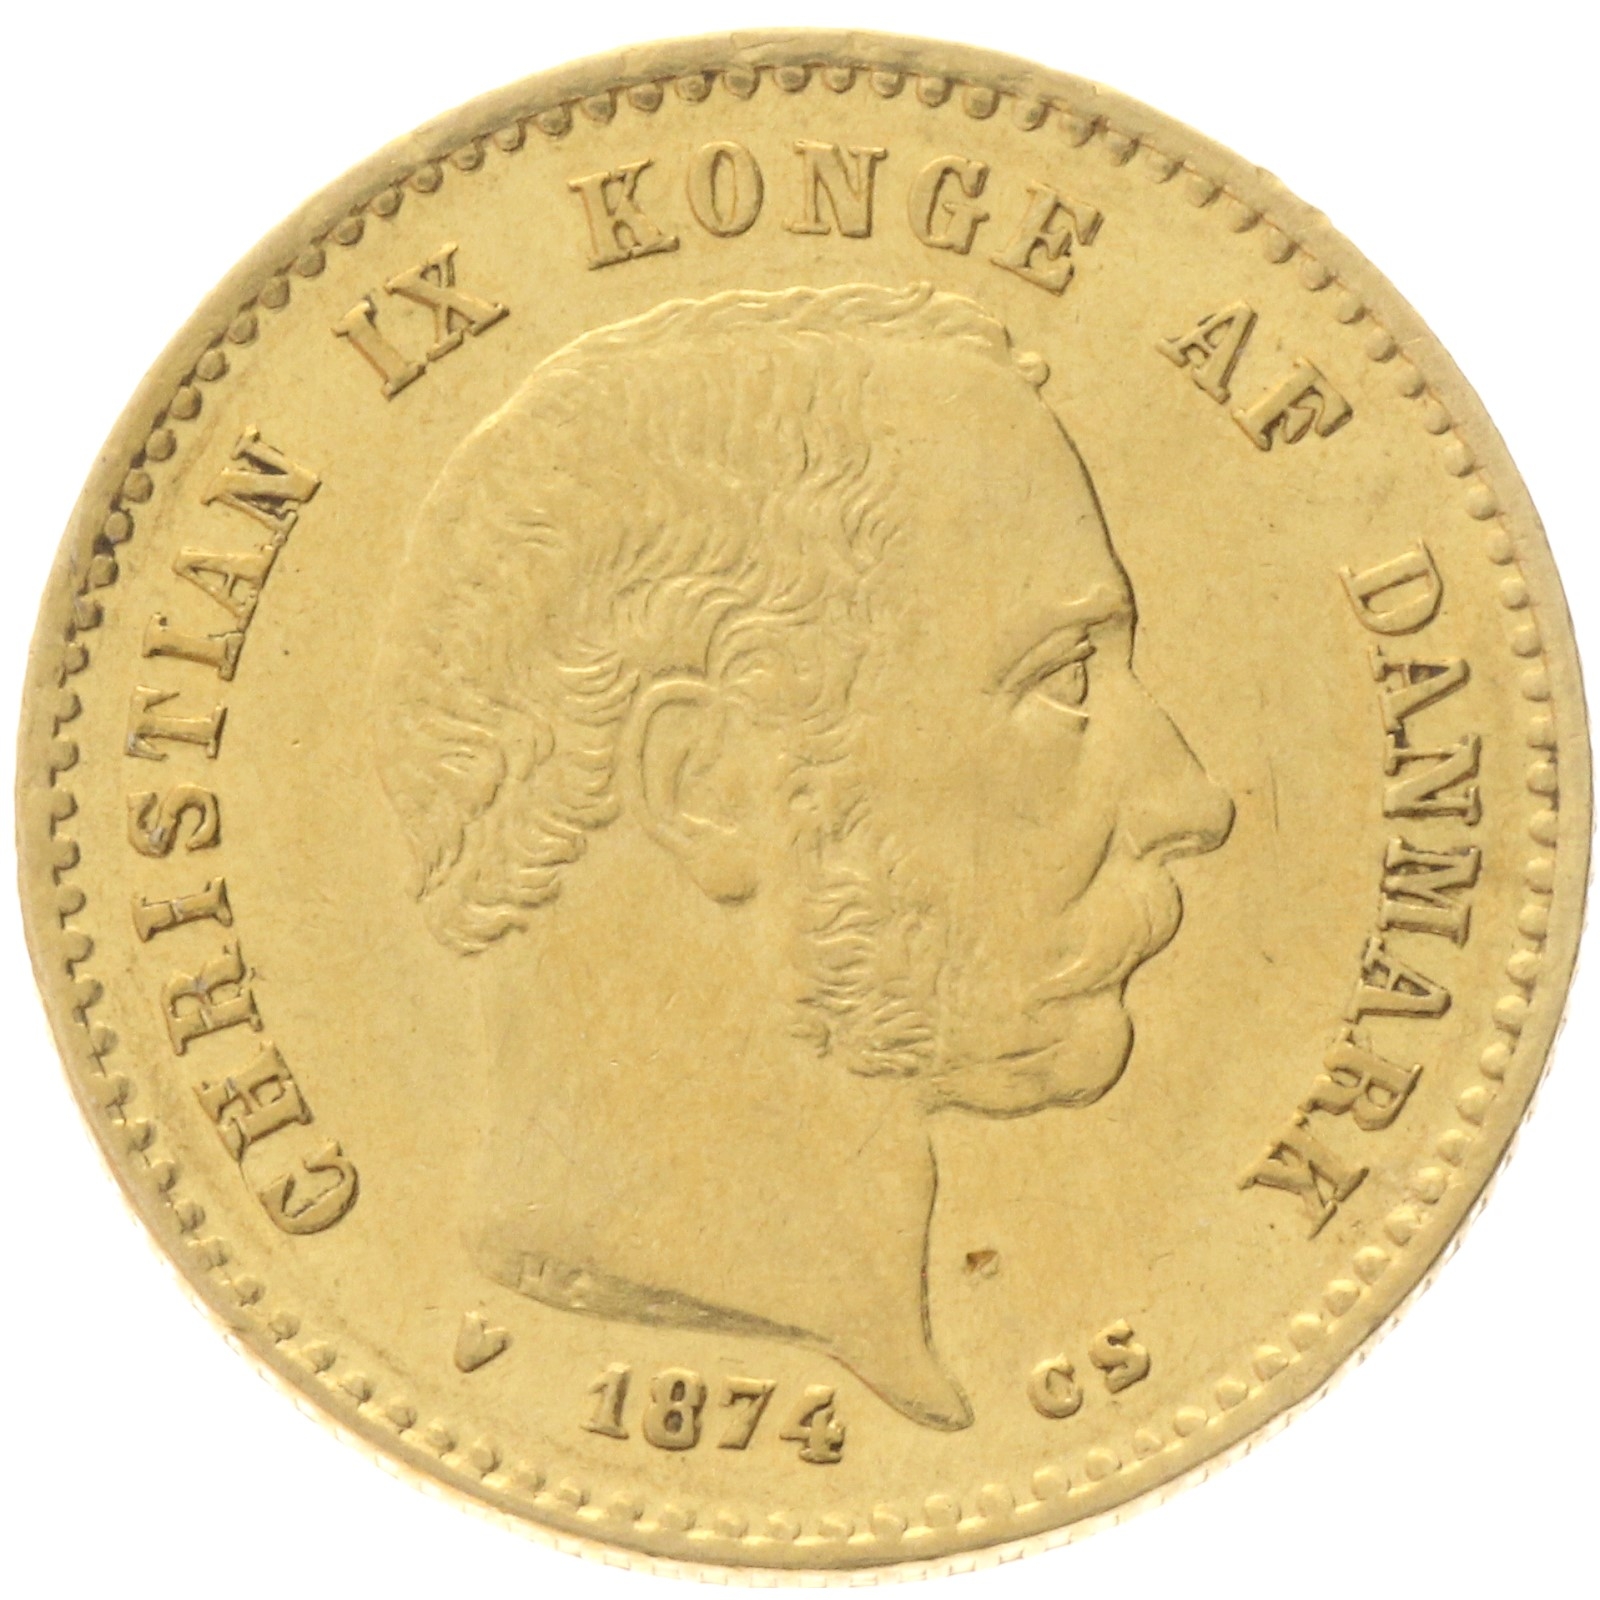 Denmark - 10 kroner - 1874 - Christian IX 